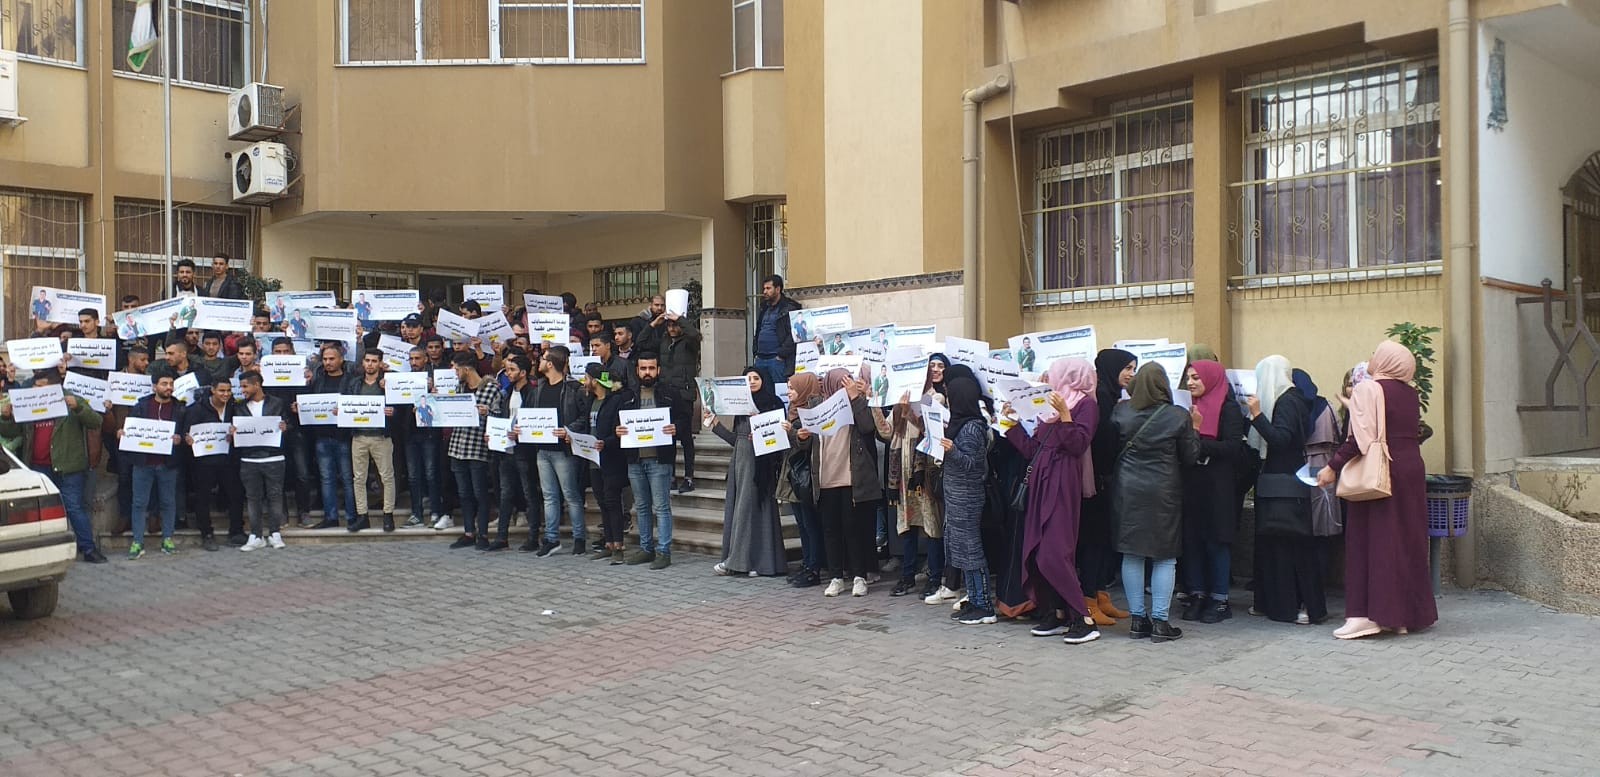 بالصور: اعتصام داخل جامعة الأزهر بغزة للمطالبة بإجراء انتخابات مجلس الطلبة